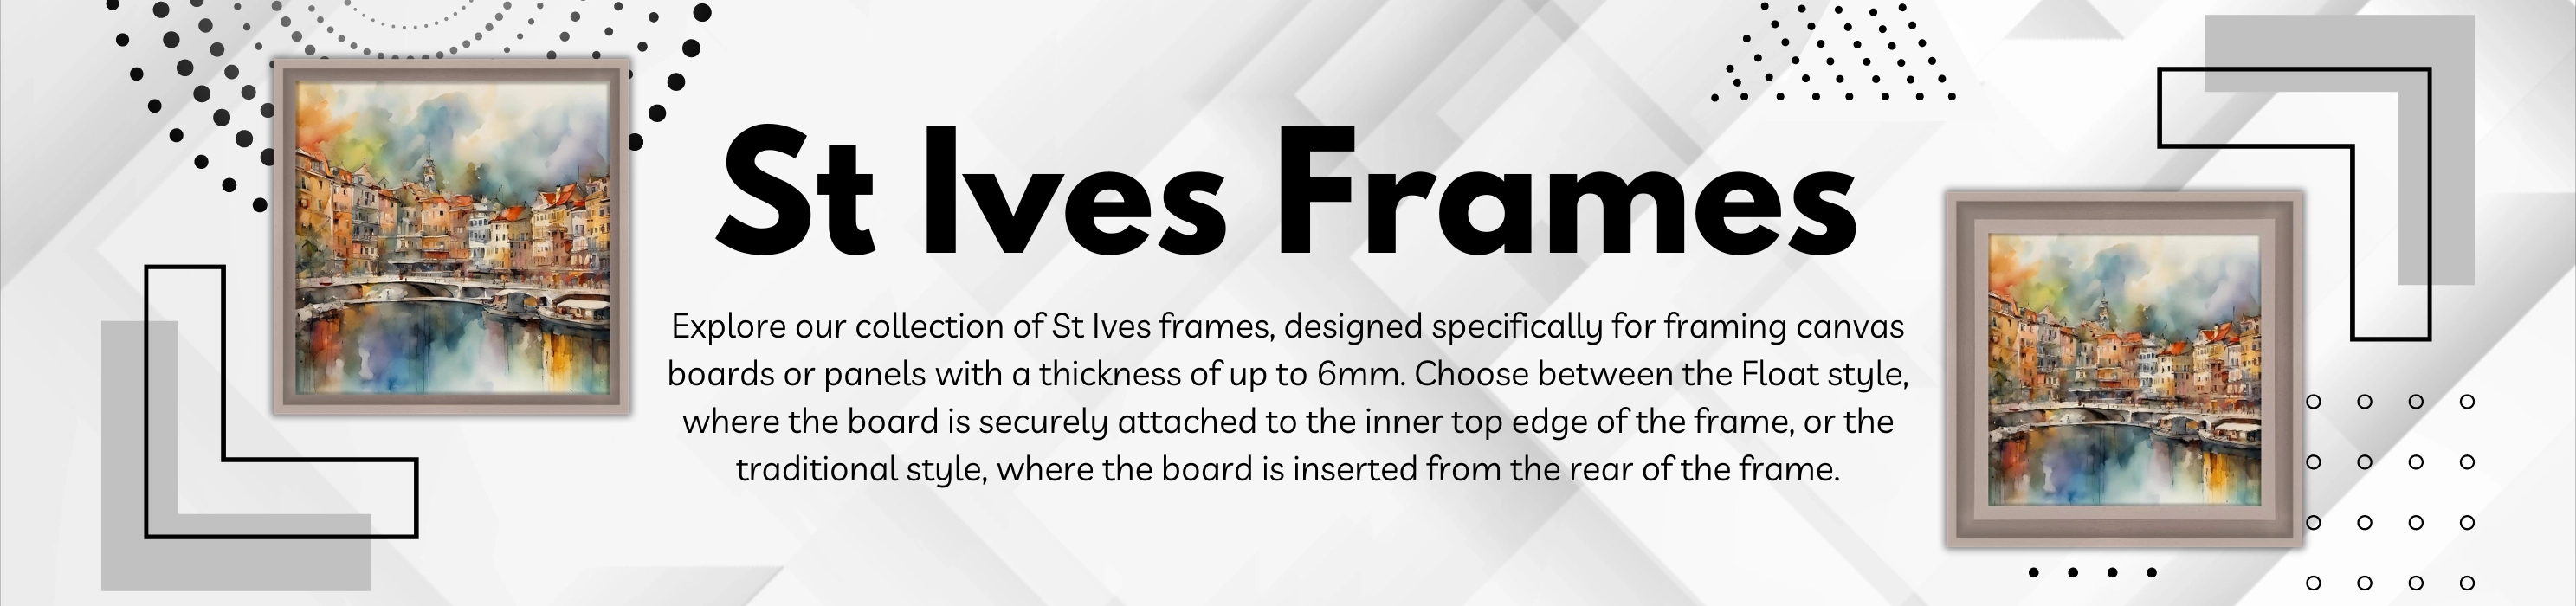 St Ives Frames banner